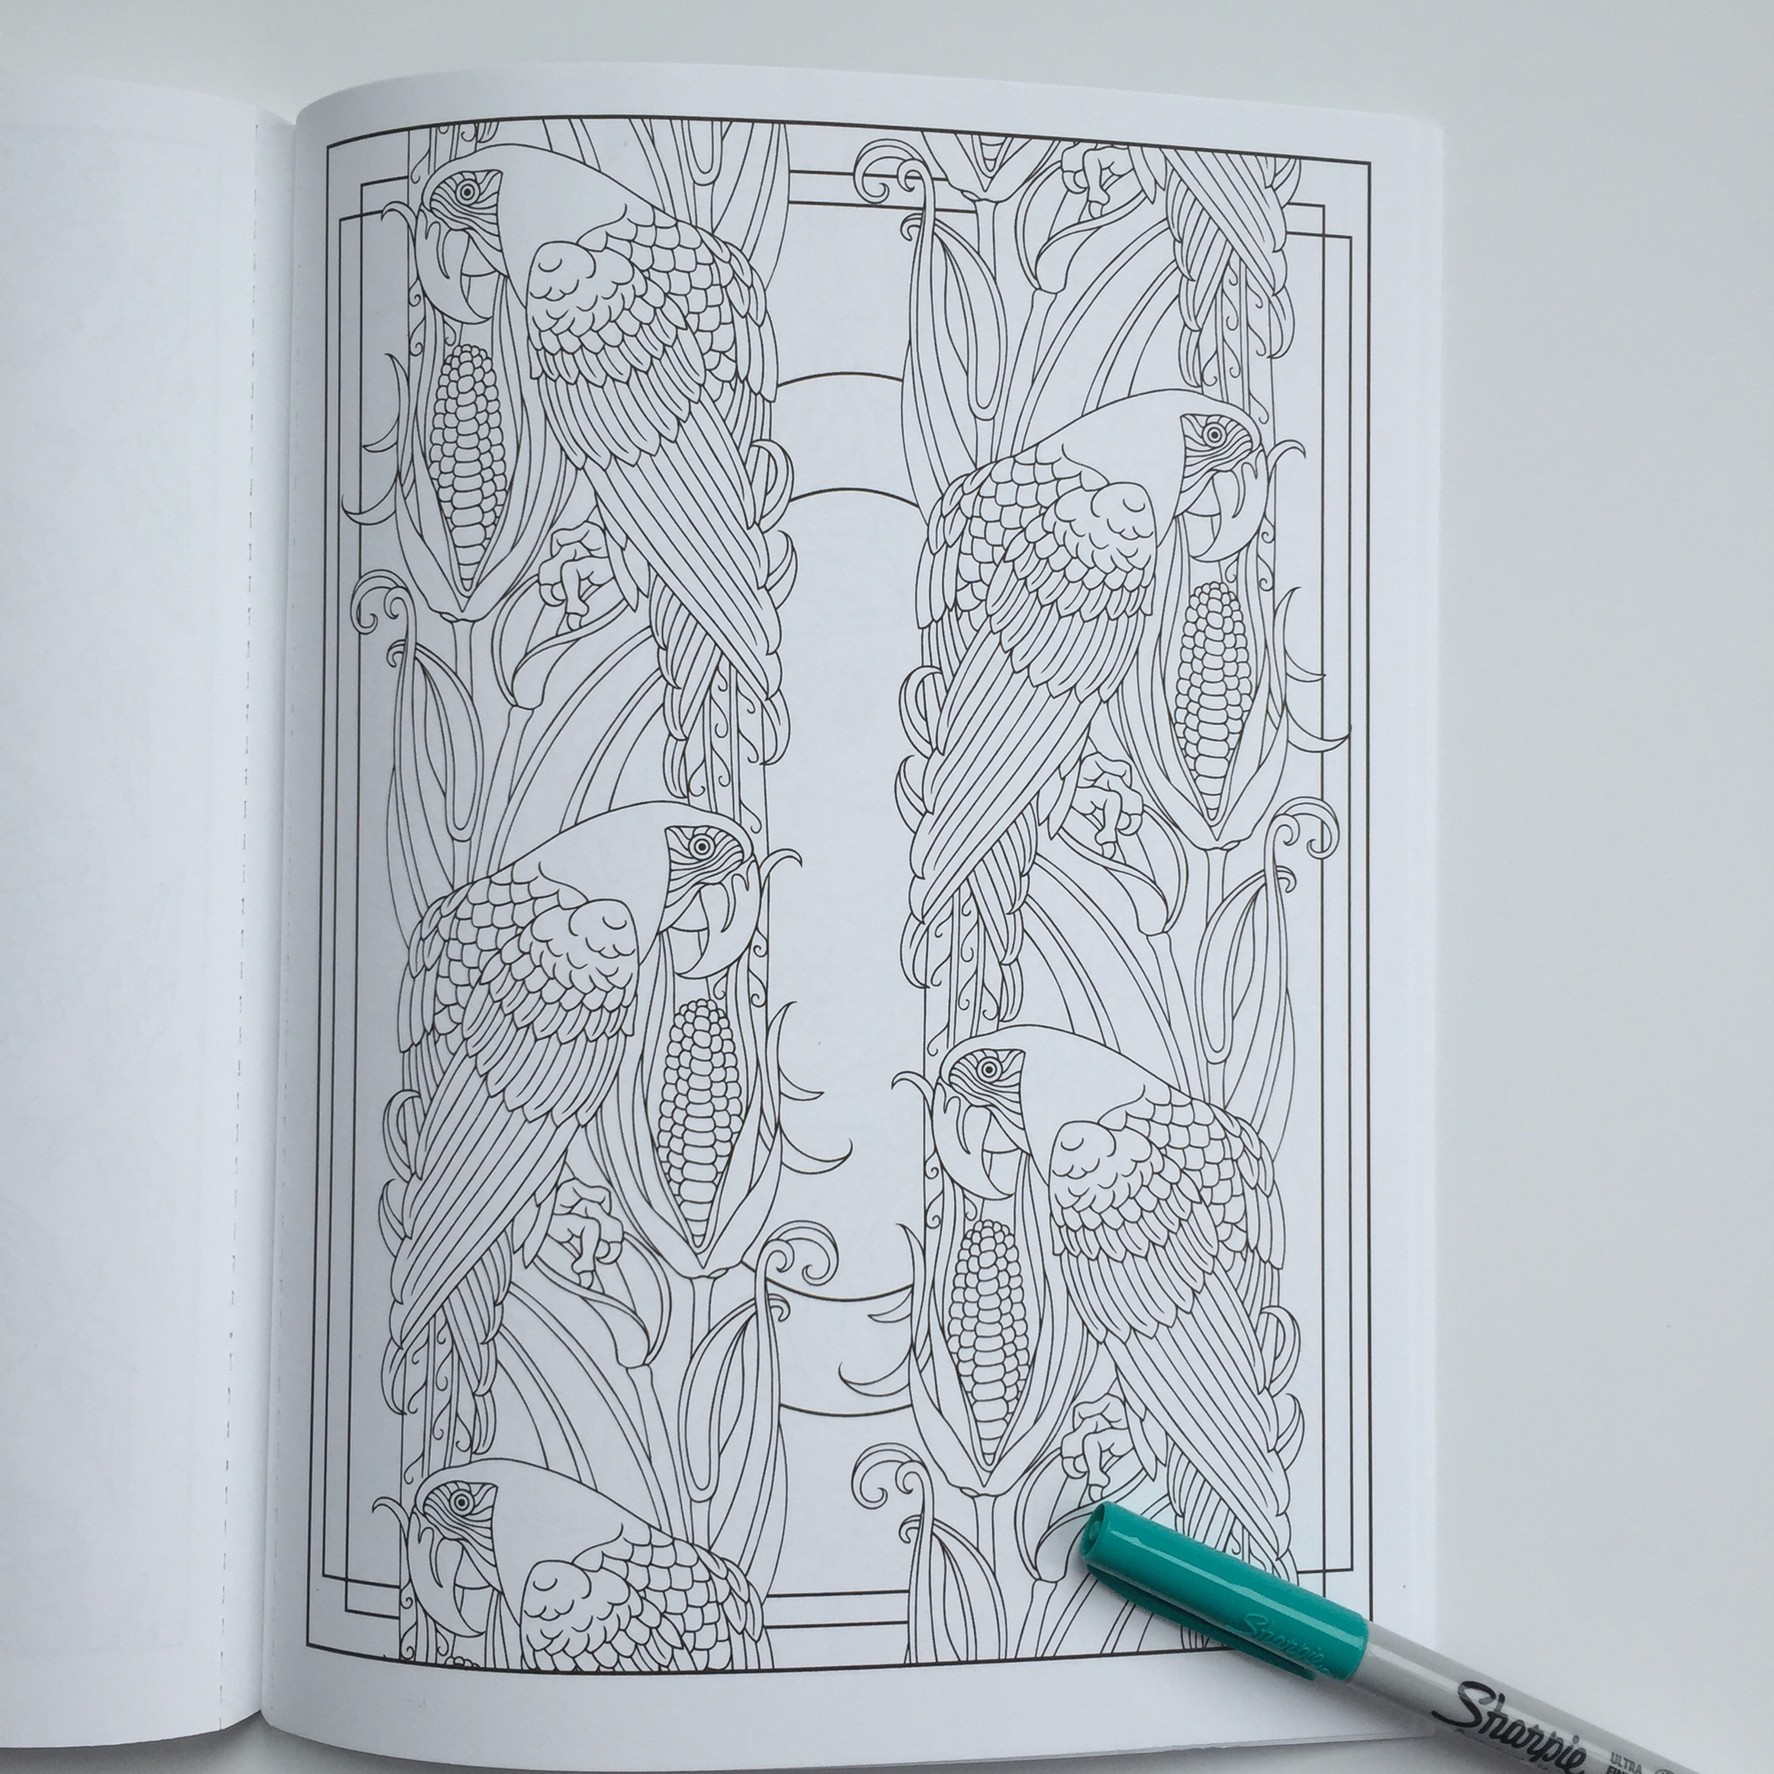 Art Nouveau Animal Designs Coloring Book Review - 2 Old 2 Color